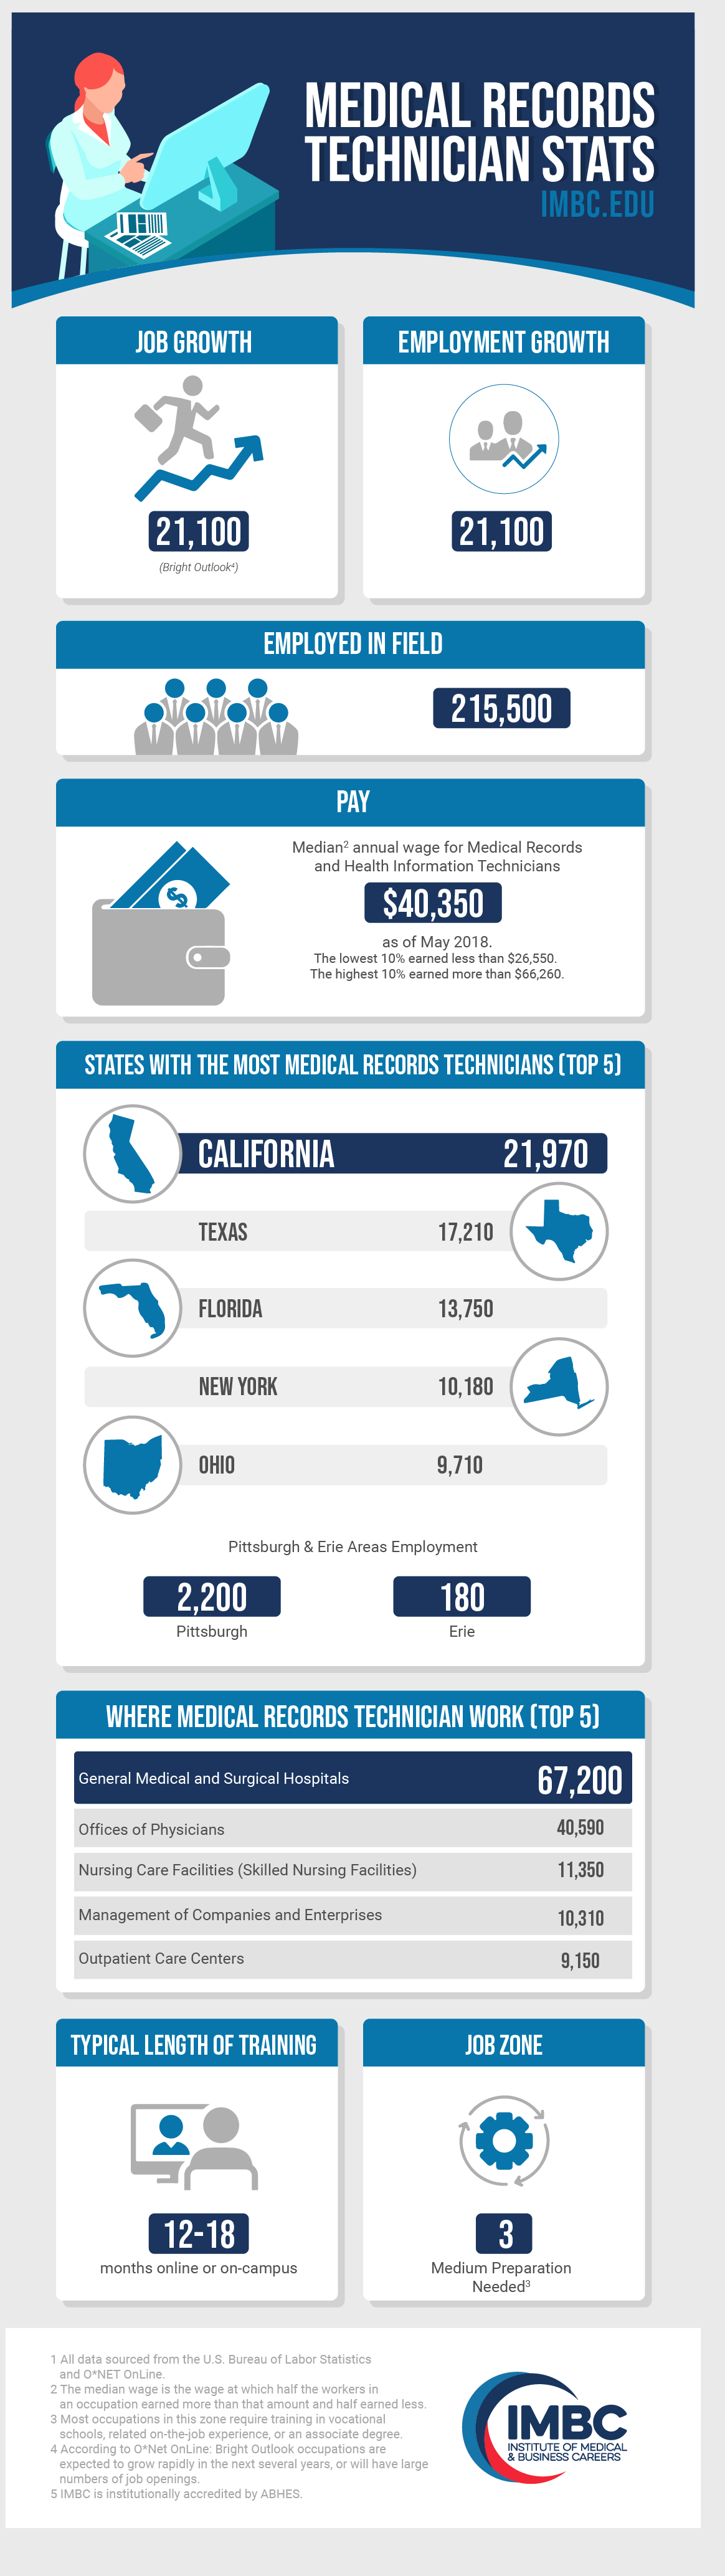 Medical Records Technician Stats